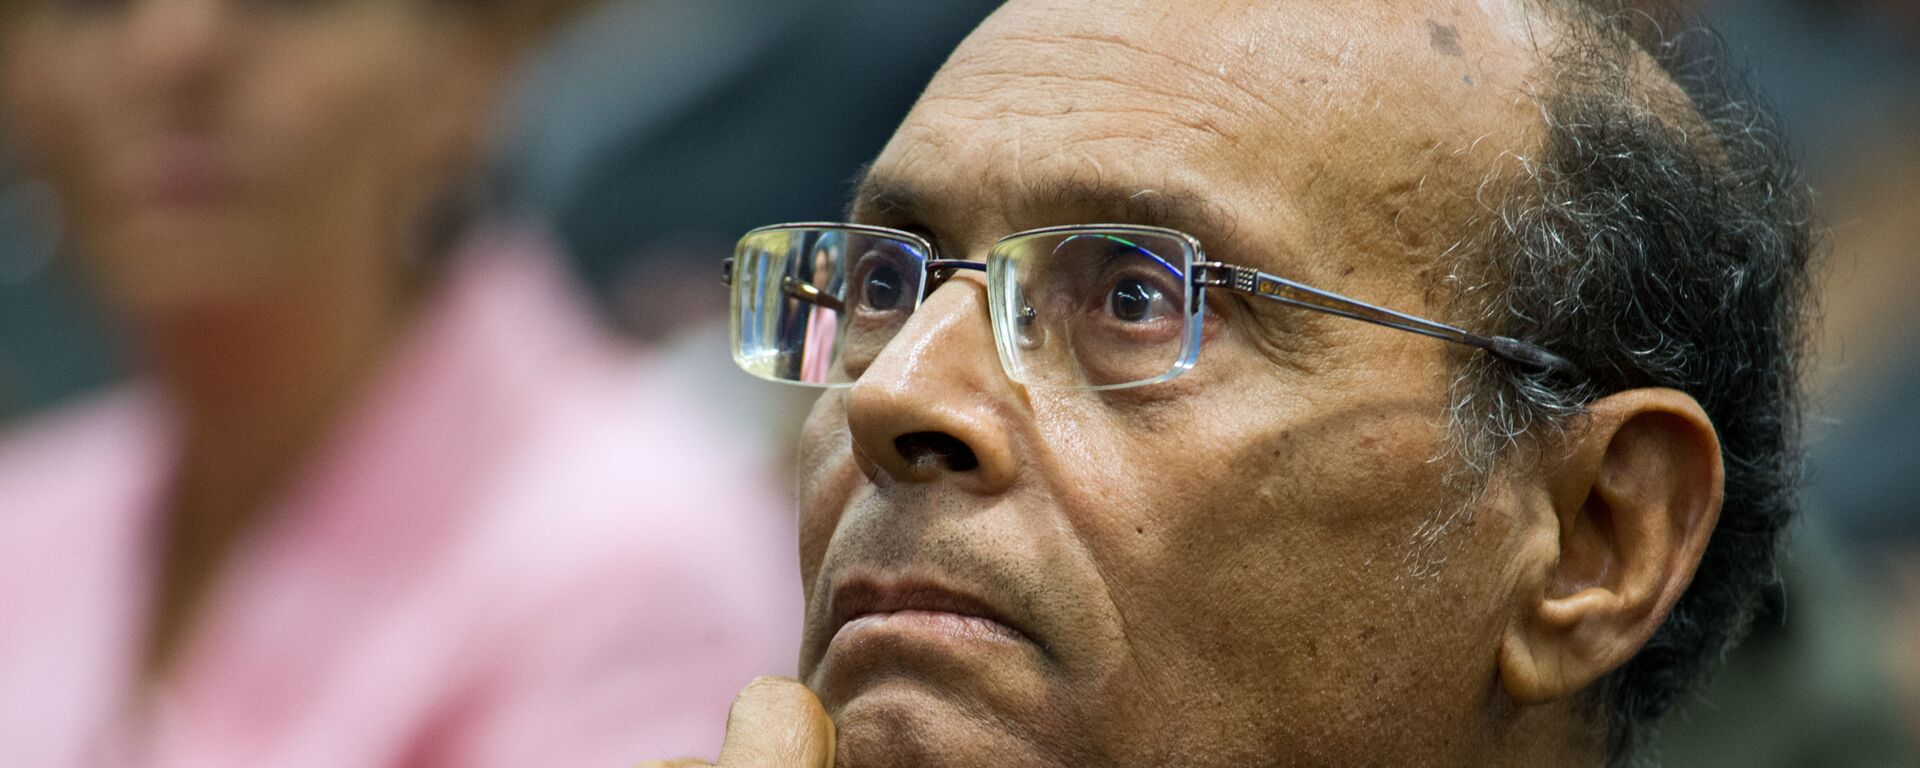 محمد المنصف المرزوقي، مرشح للرئاسة التونسية، صورة من عام 2014 - سبوتنيك عربي, 1920, 07.09.2021